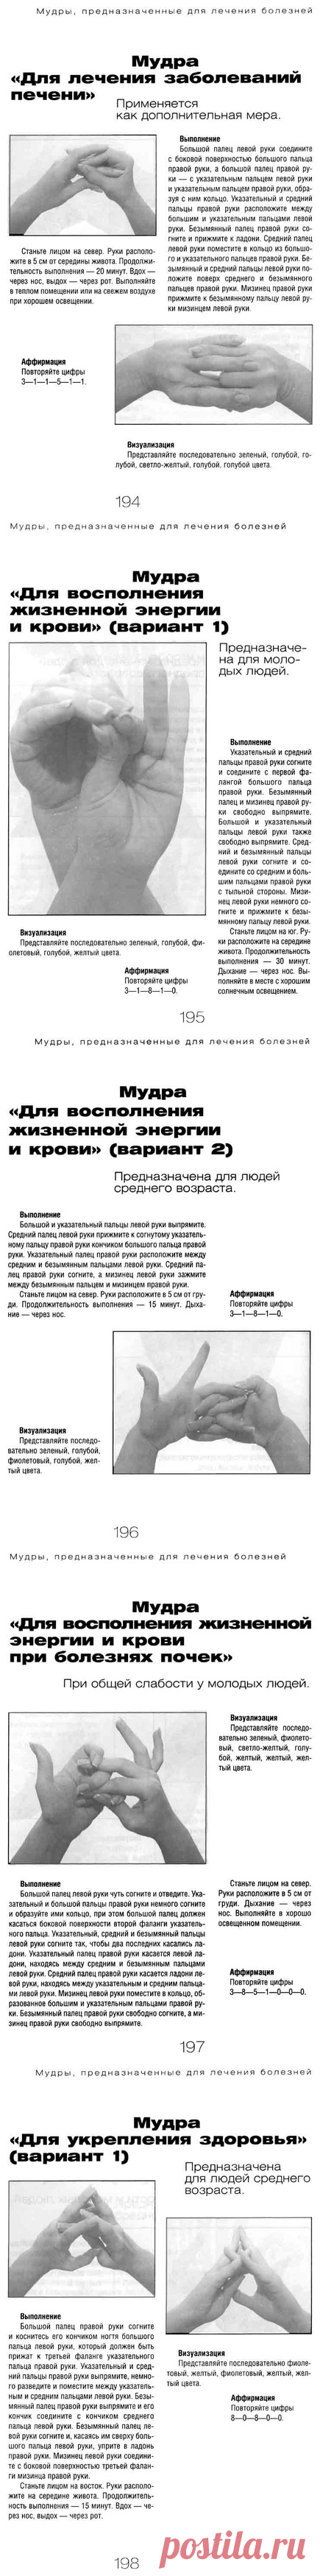 Сергей Крутов -- йога пальцев (Мудры для лечения болезней) Часть 6